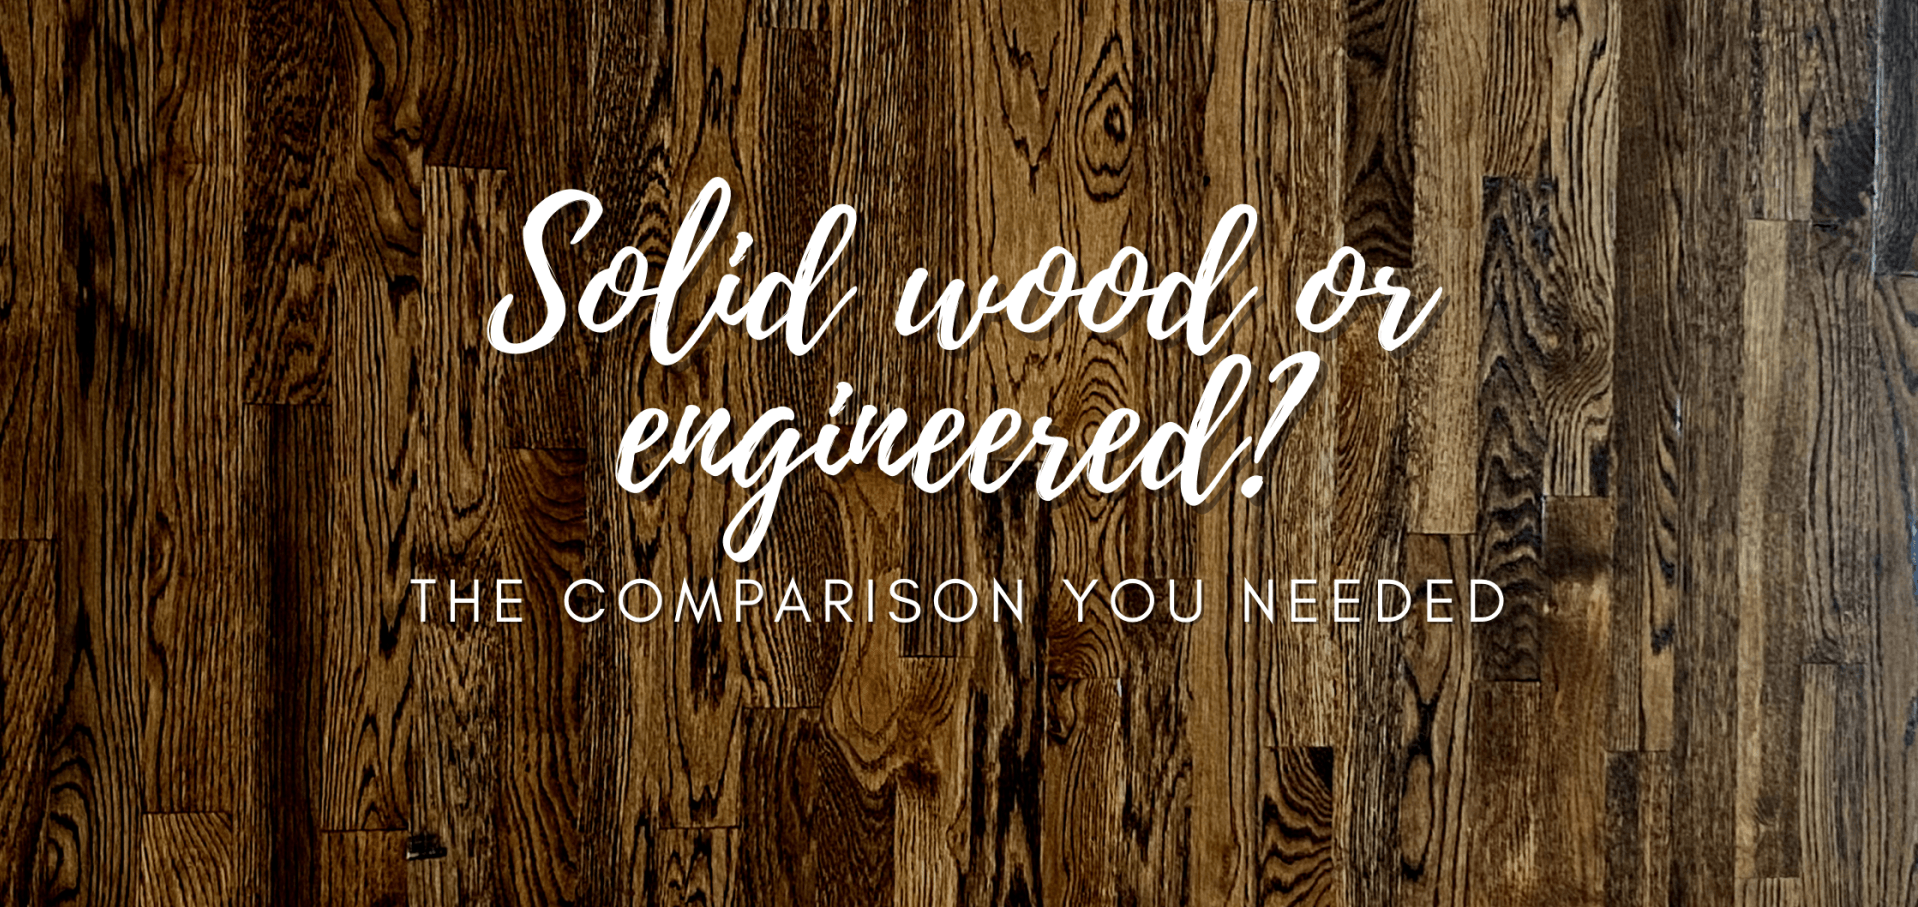 Hardwood vs engineered